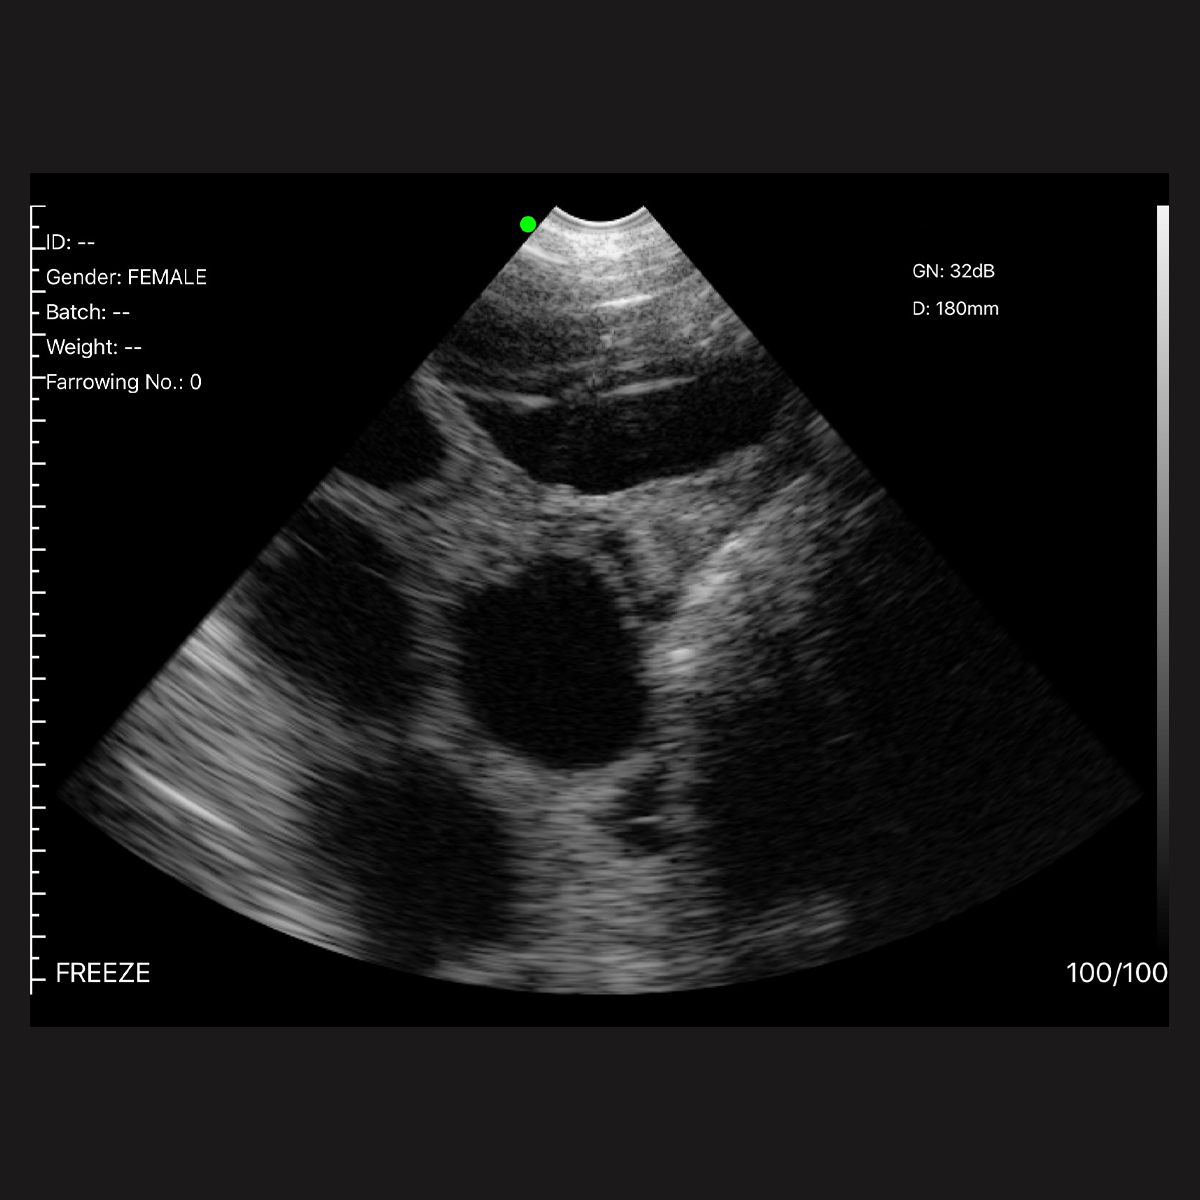 Ultrasound - Image 1 - Facebook